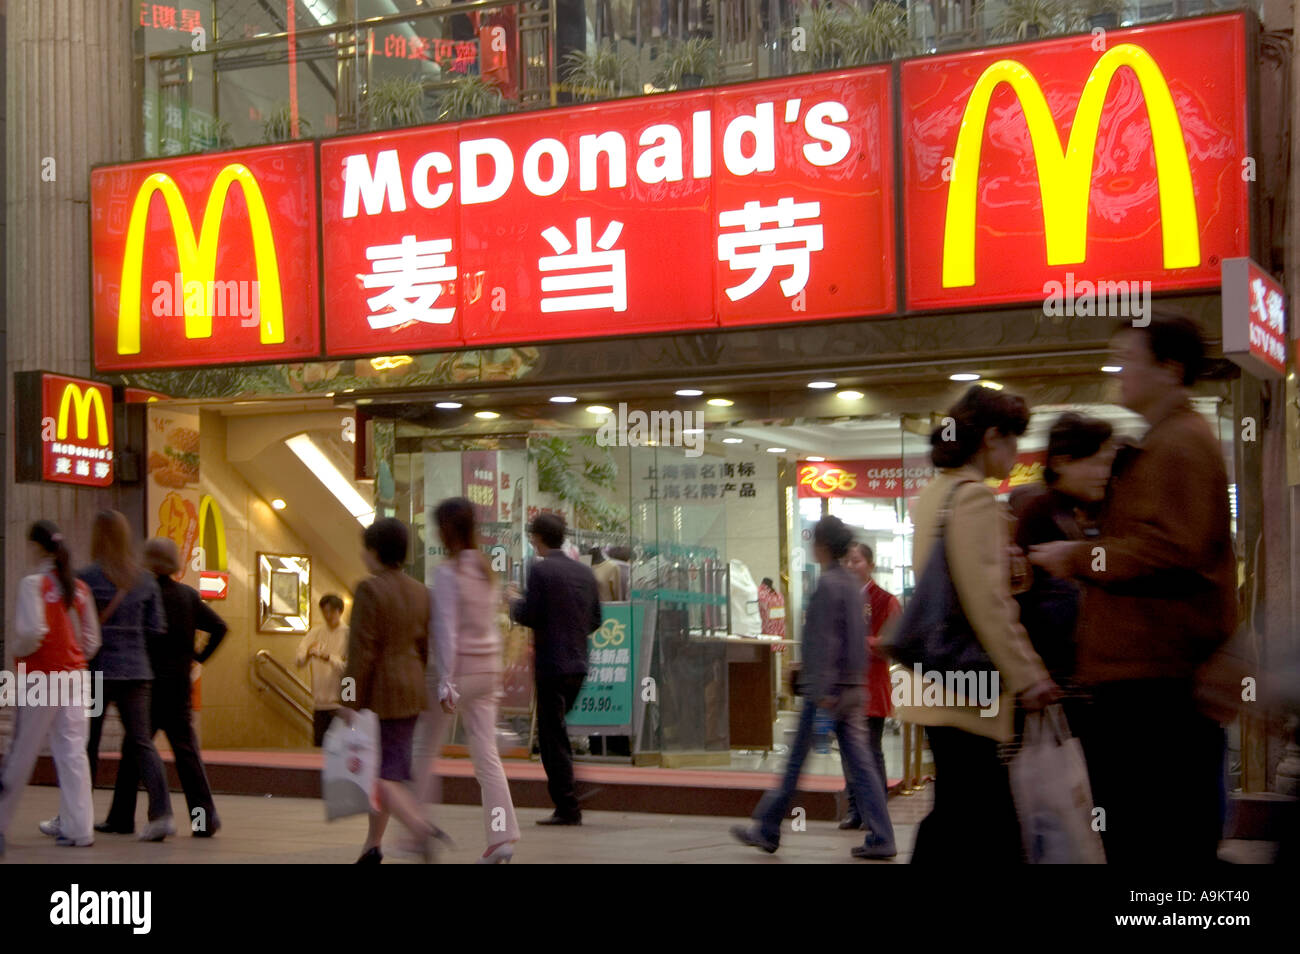 El restaurante MCDONALD S en la concurrida zona comercial peatonal de Nanjing DONGLU SHANGHAI CHINA Foto de stock